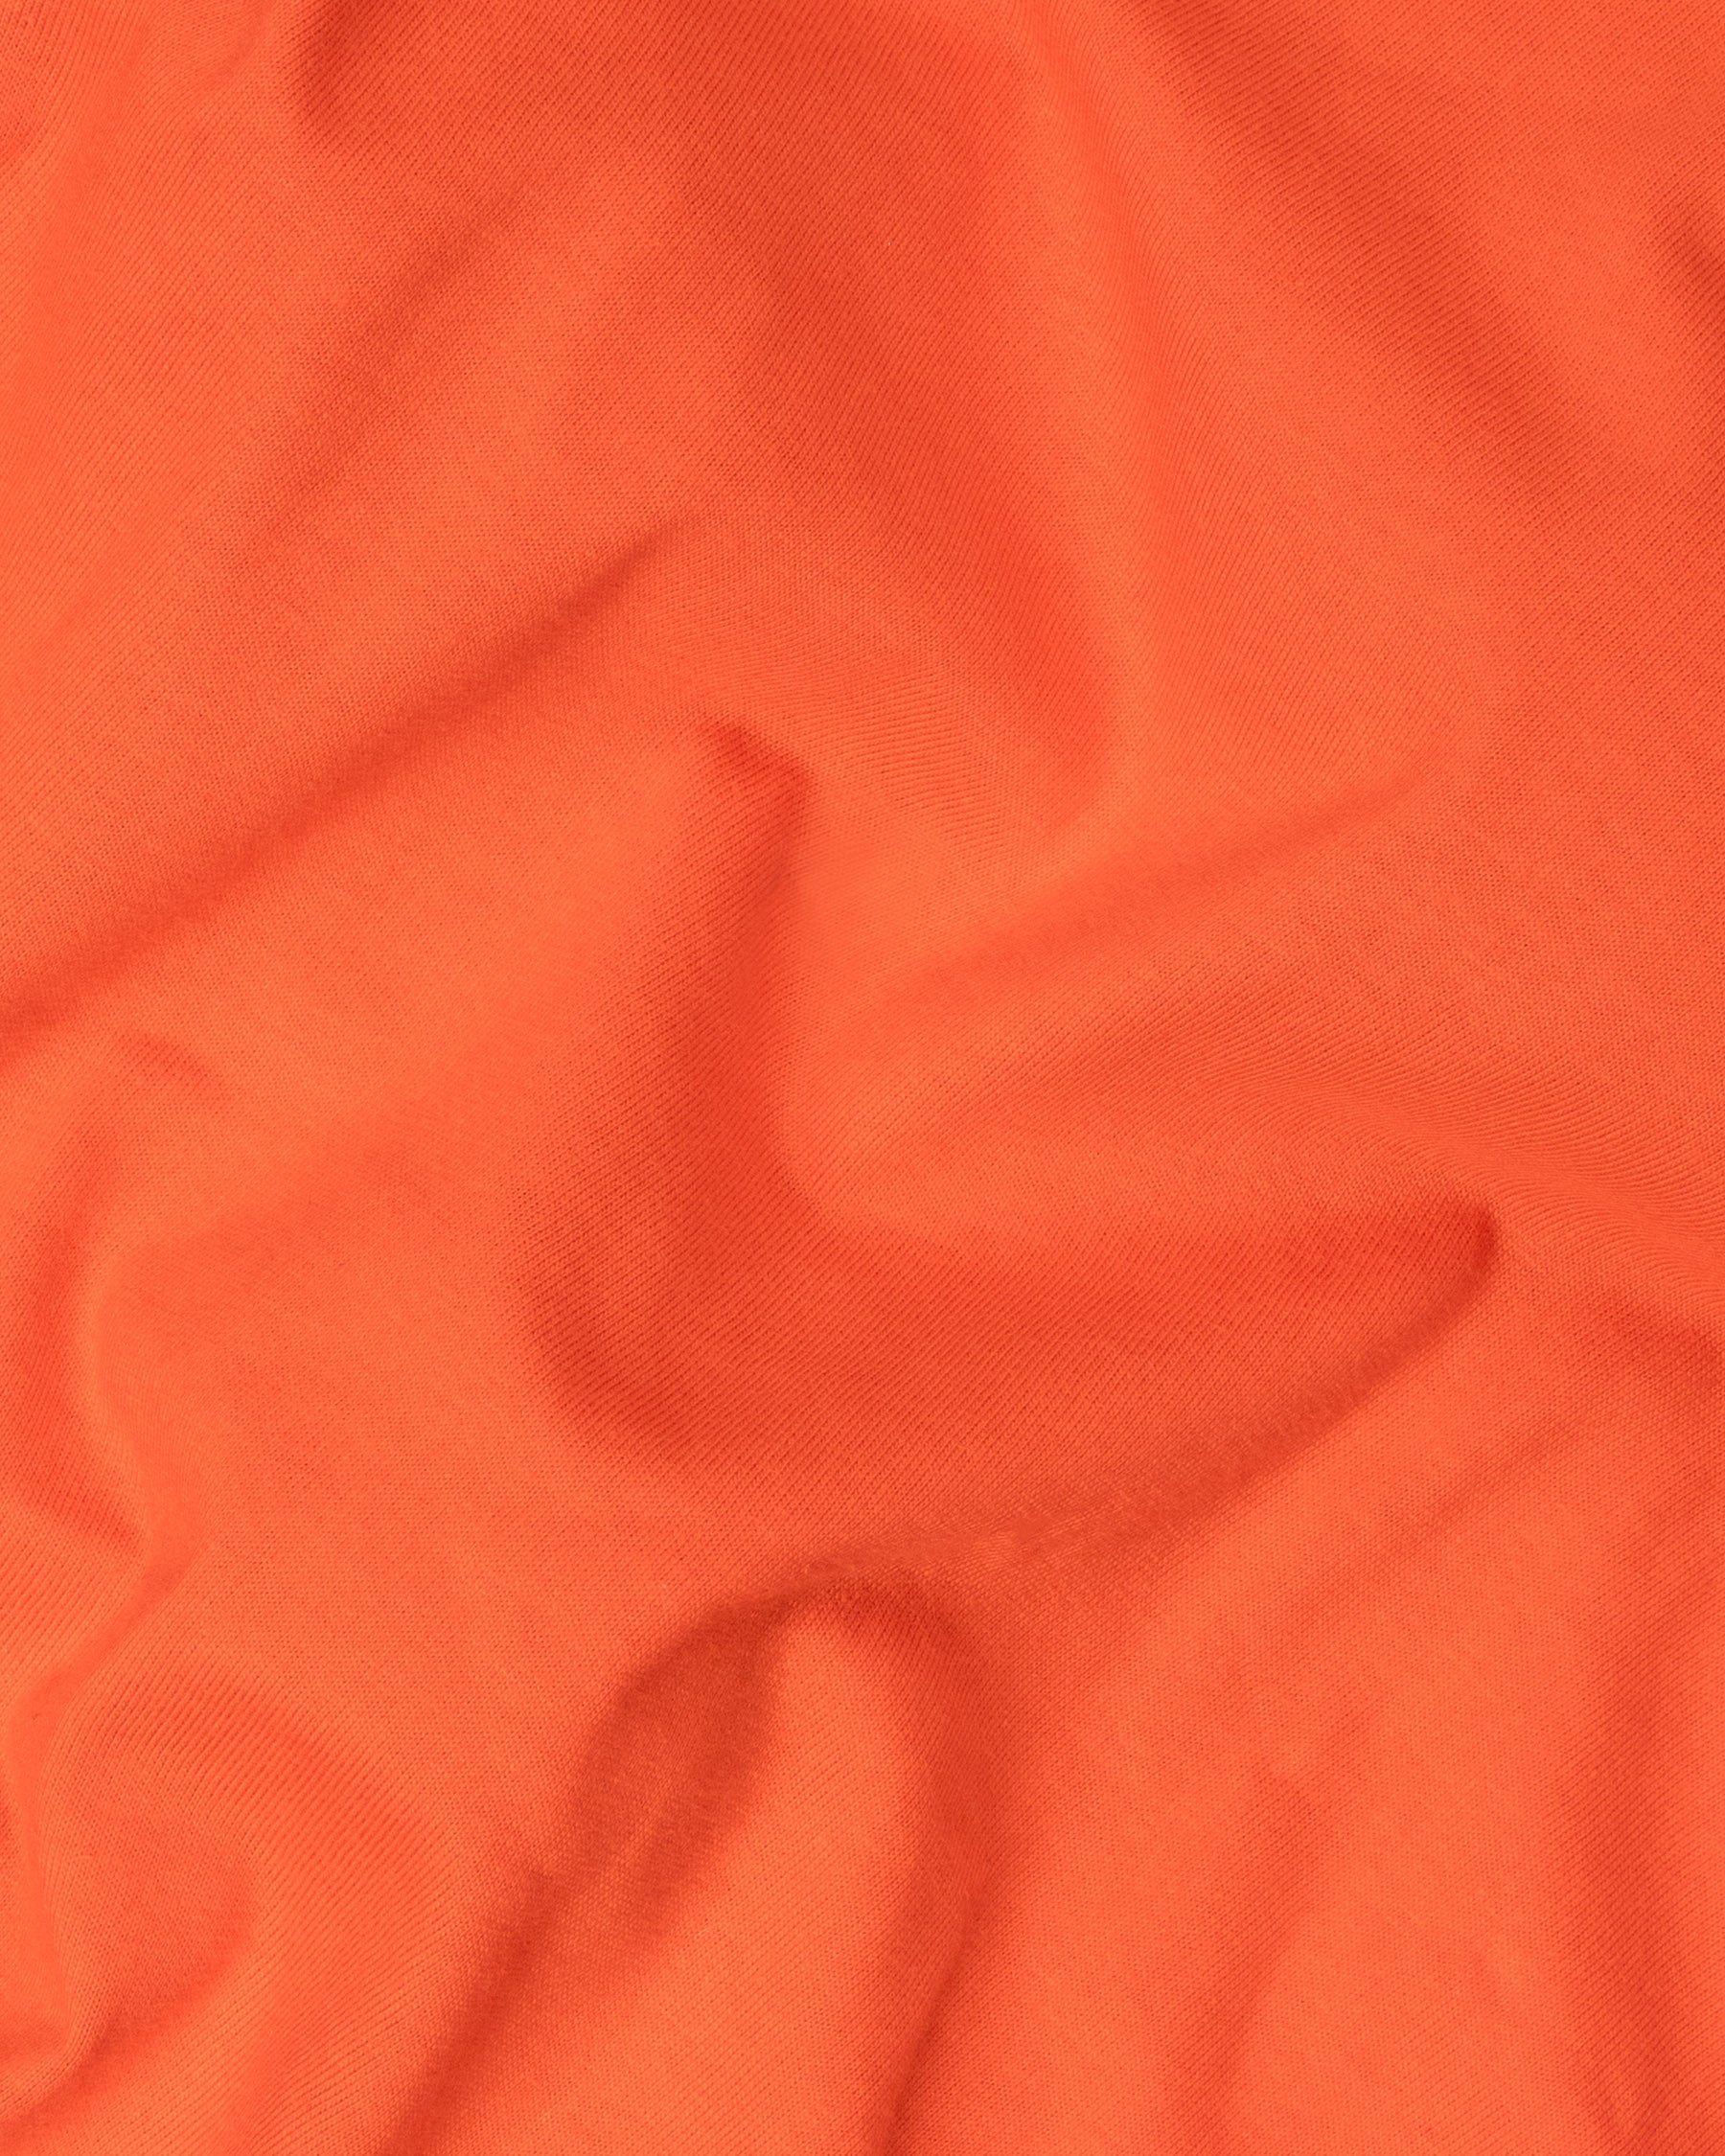 Orange Full Sleeve Premium Cotton Jersey Sweatshirt TS443-S, TS443-M, TS443-L, TS443-XL, TS443-XXL